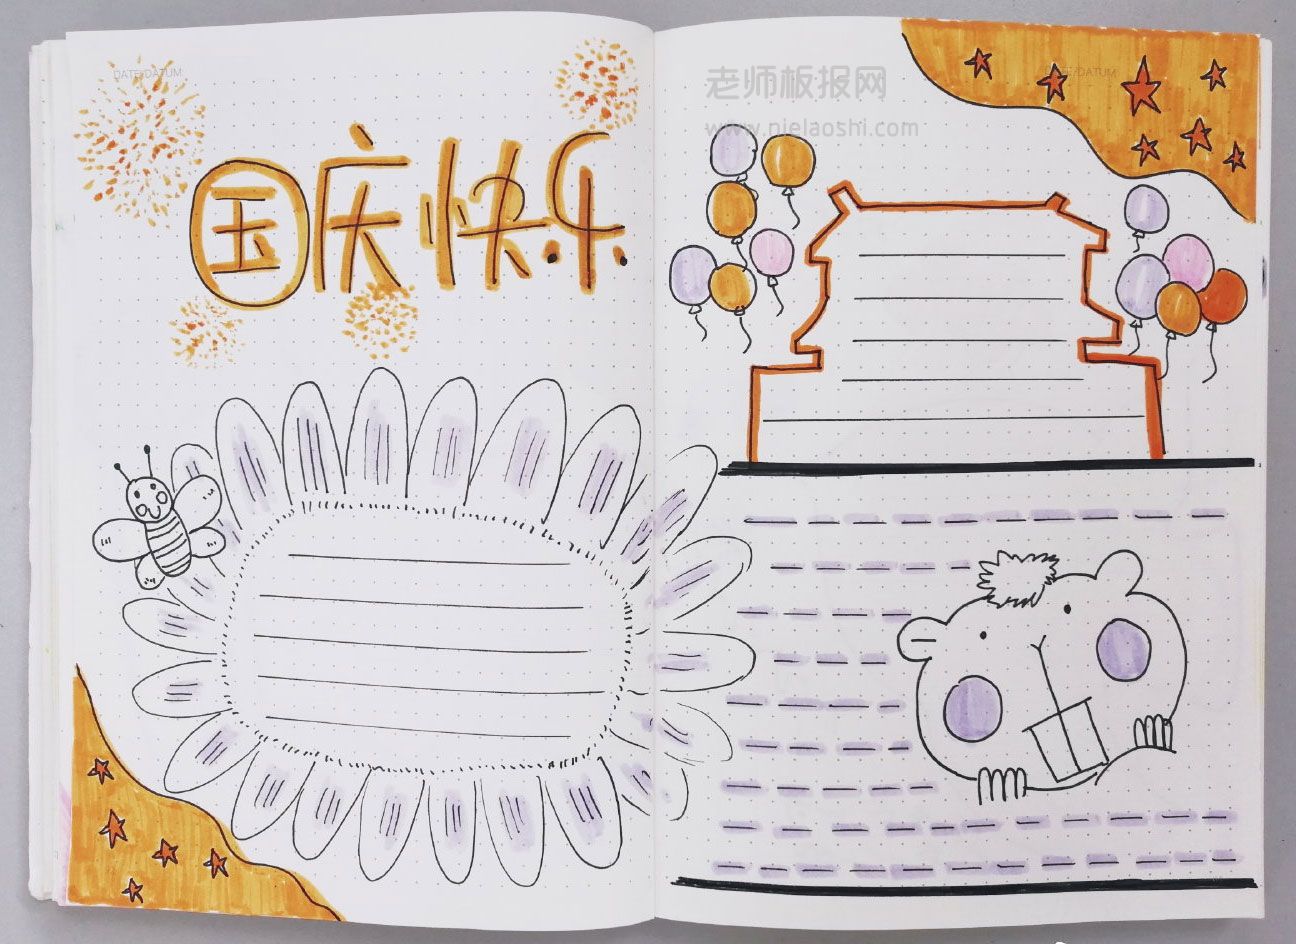 2019年国庆节手抄报版面设计图片